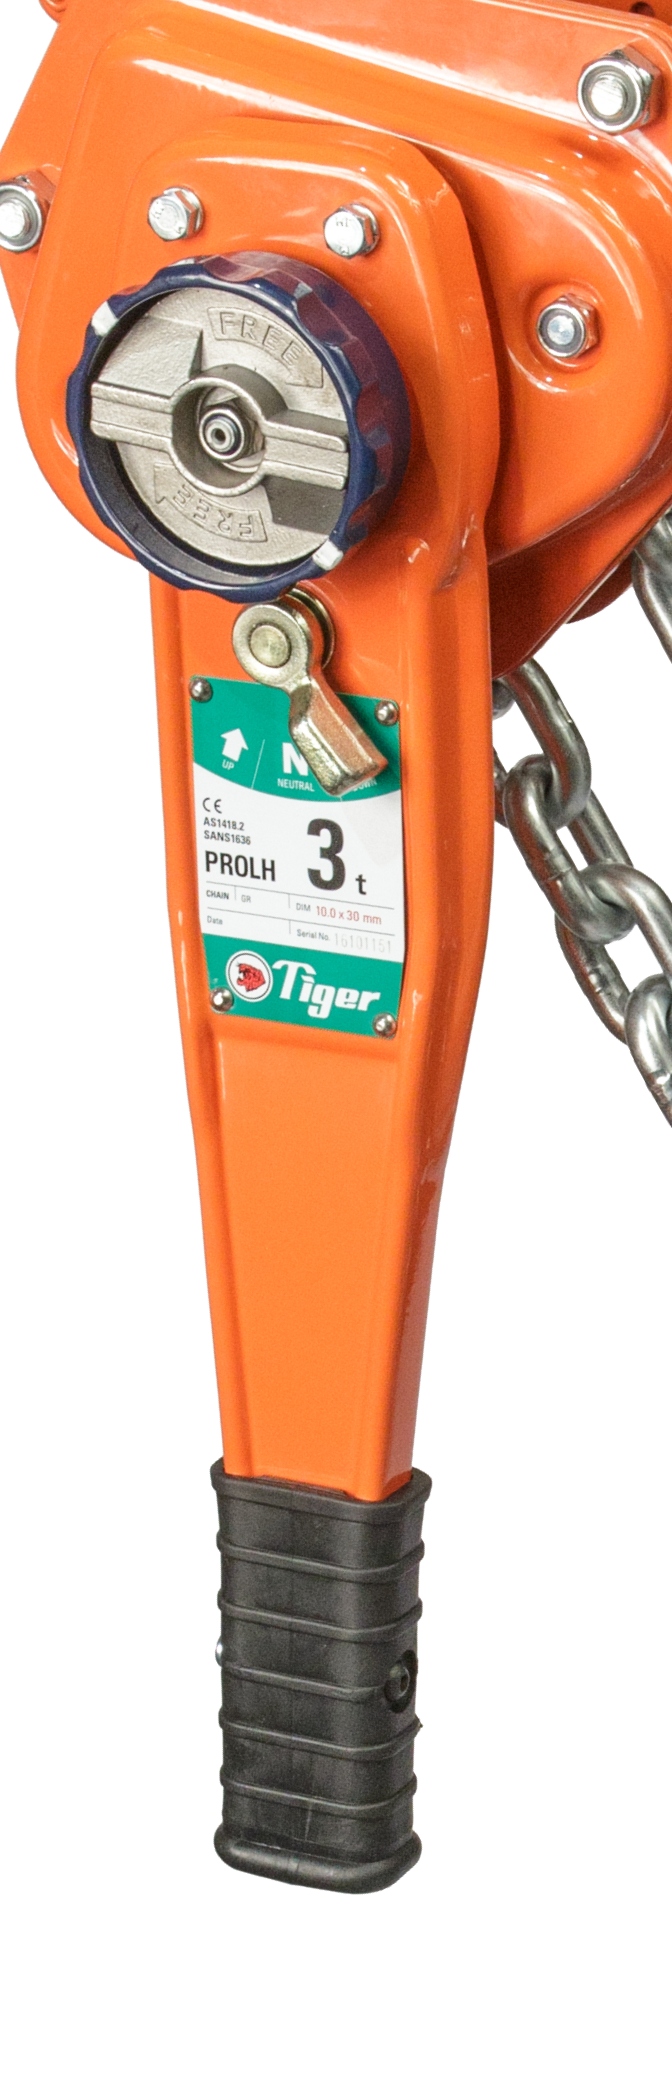 Tiger Professional Lever Hoist PROLH 10.0t to Buy Online RIGGINGUK